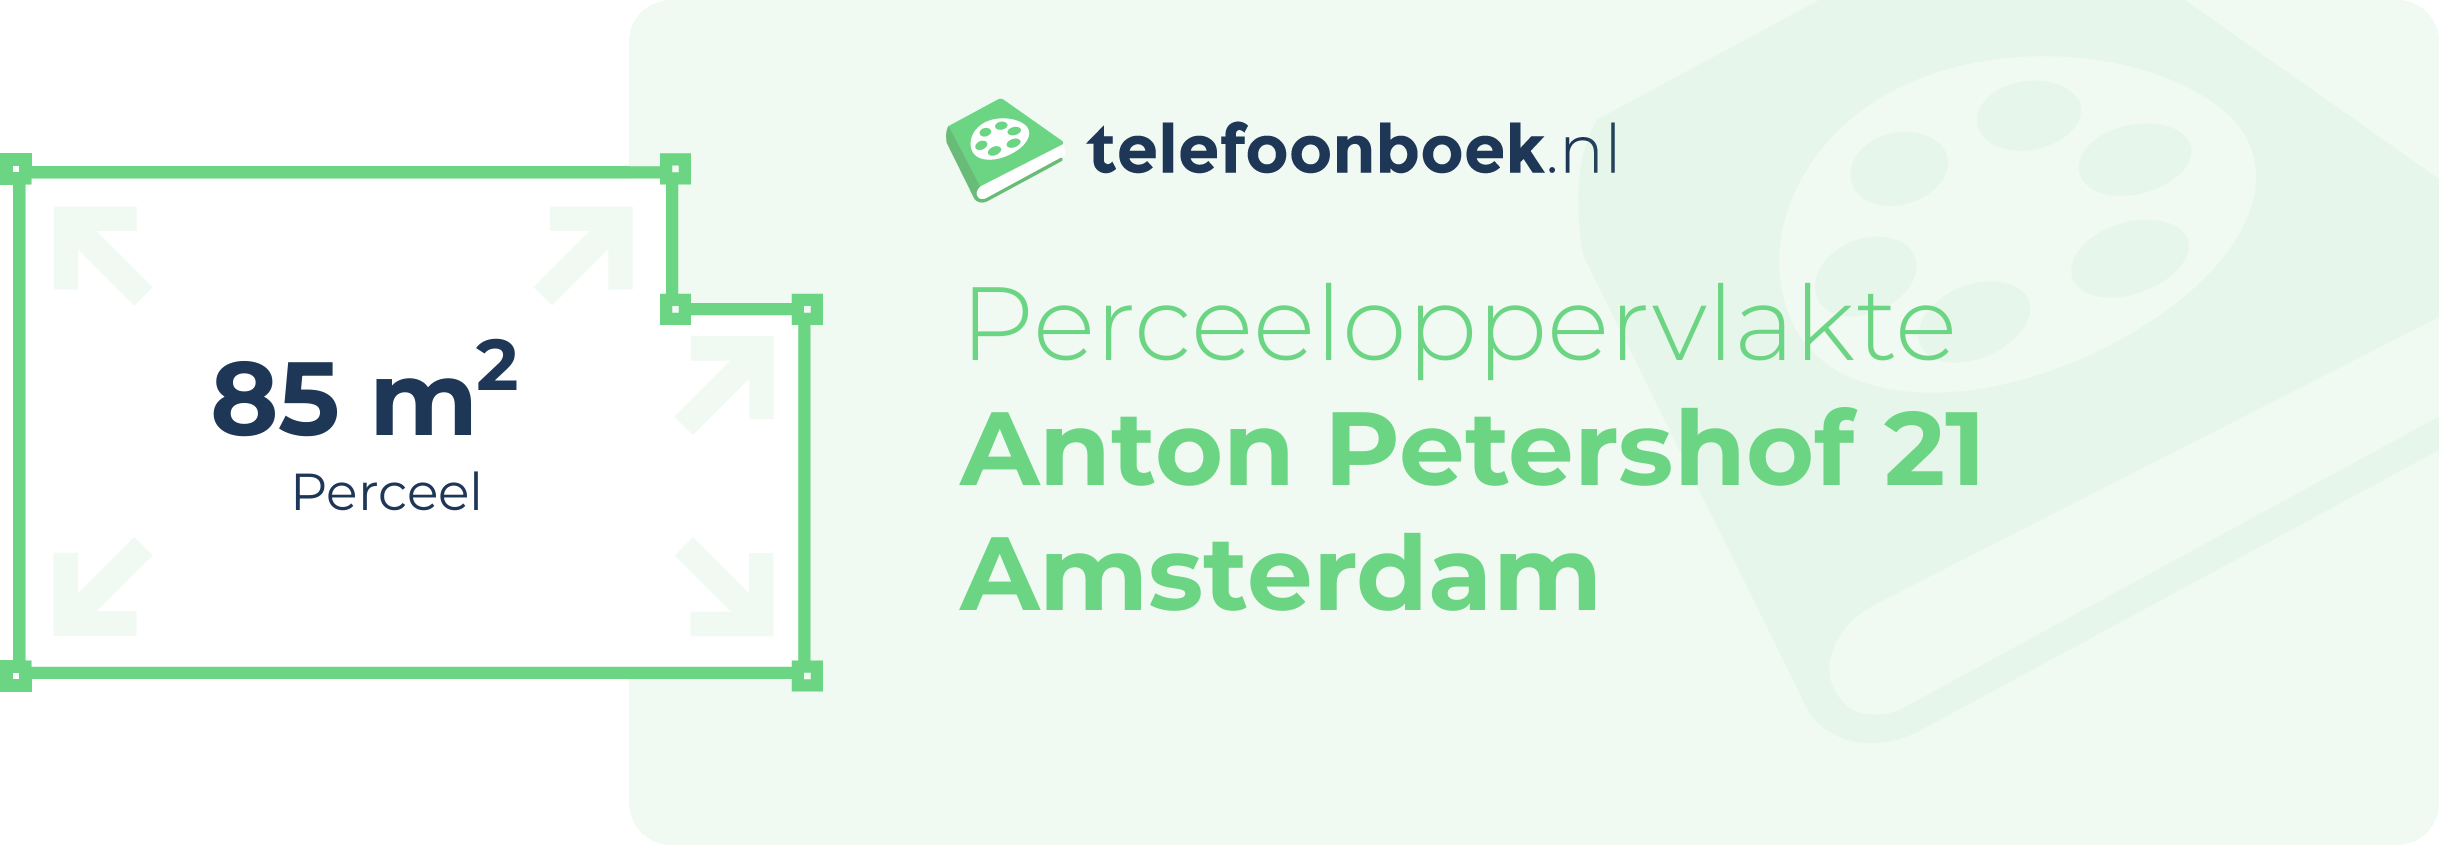 Perceeloppervlakte Anton Petershof 21 Amsterdam